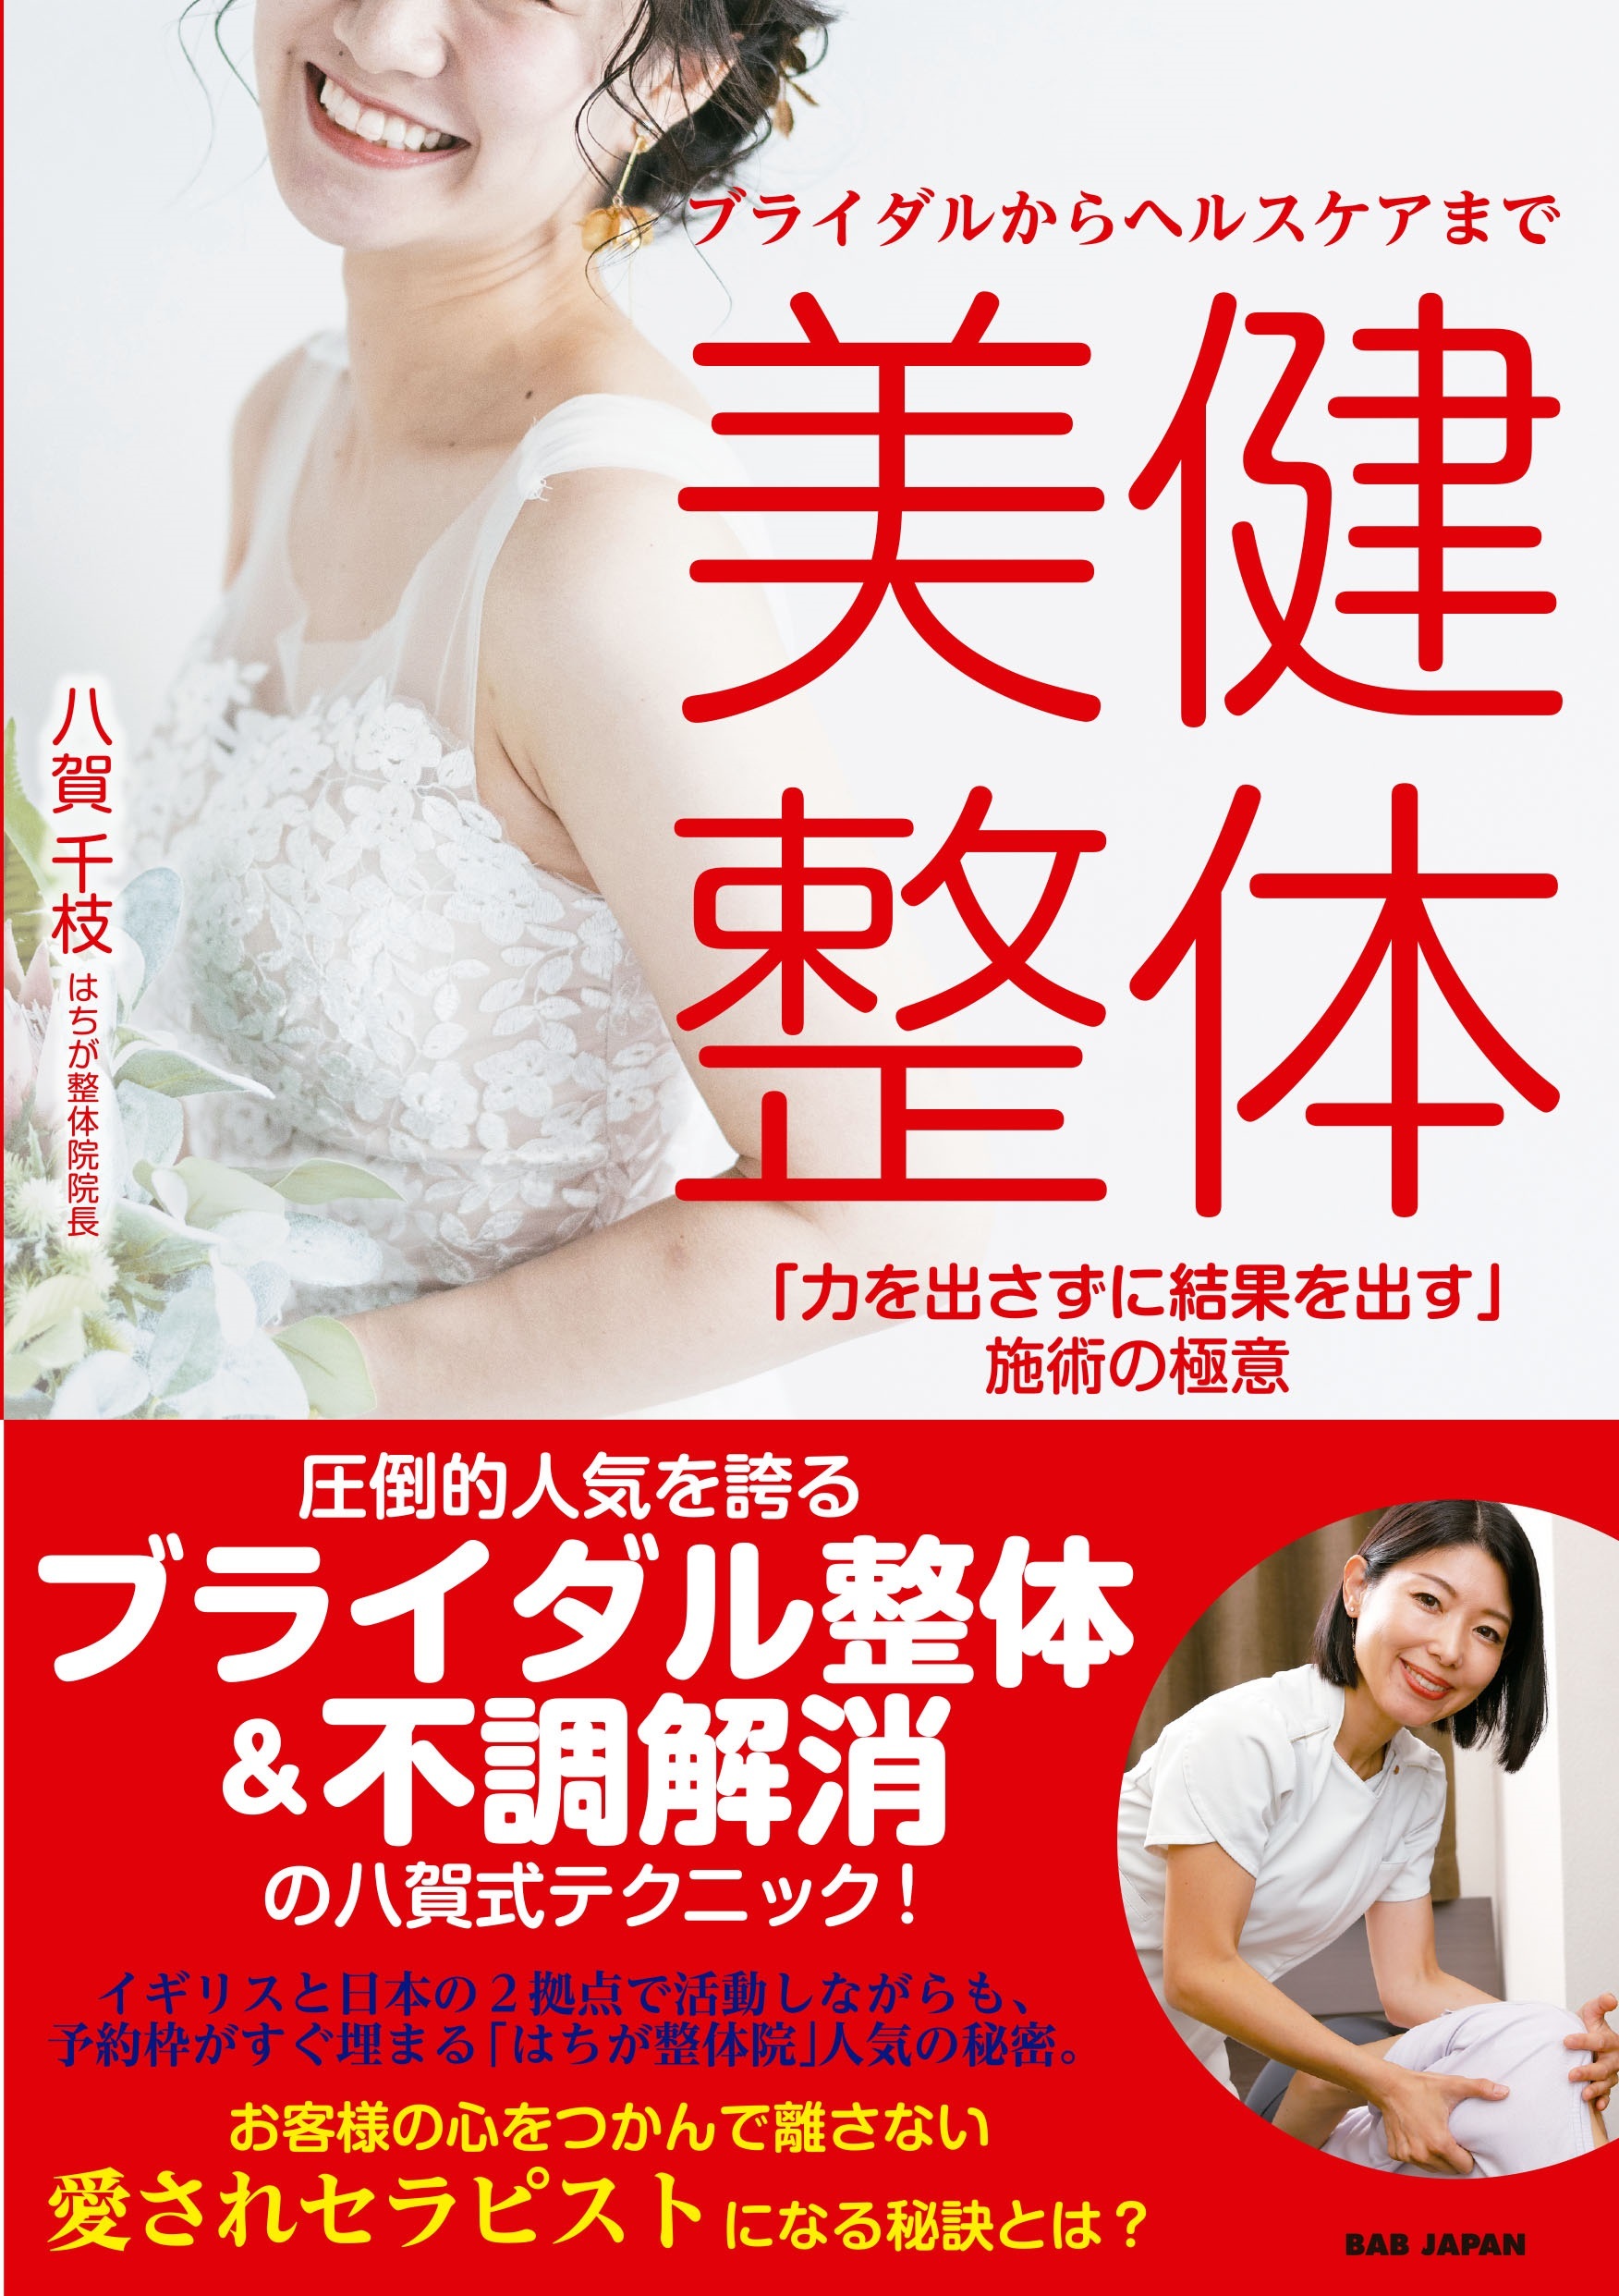 日本美容健康エビデンス協会、東洋厚生製薬所が製造する
清涼飲料水「純パプラール水」に初のゴールド認証を授与